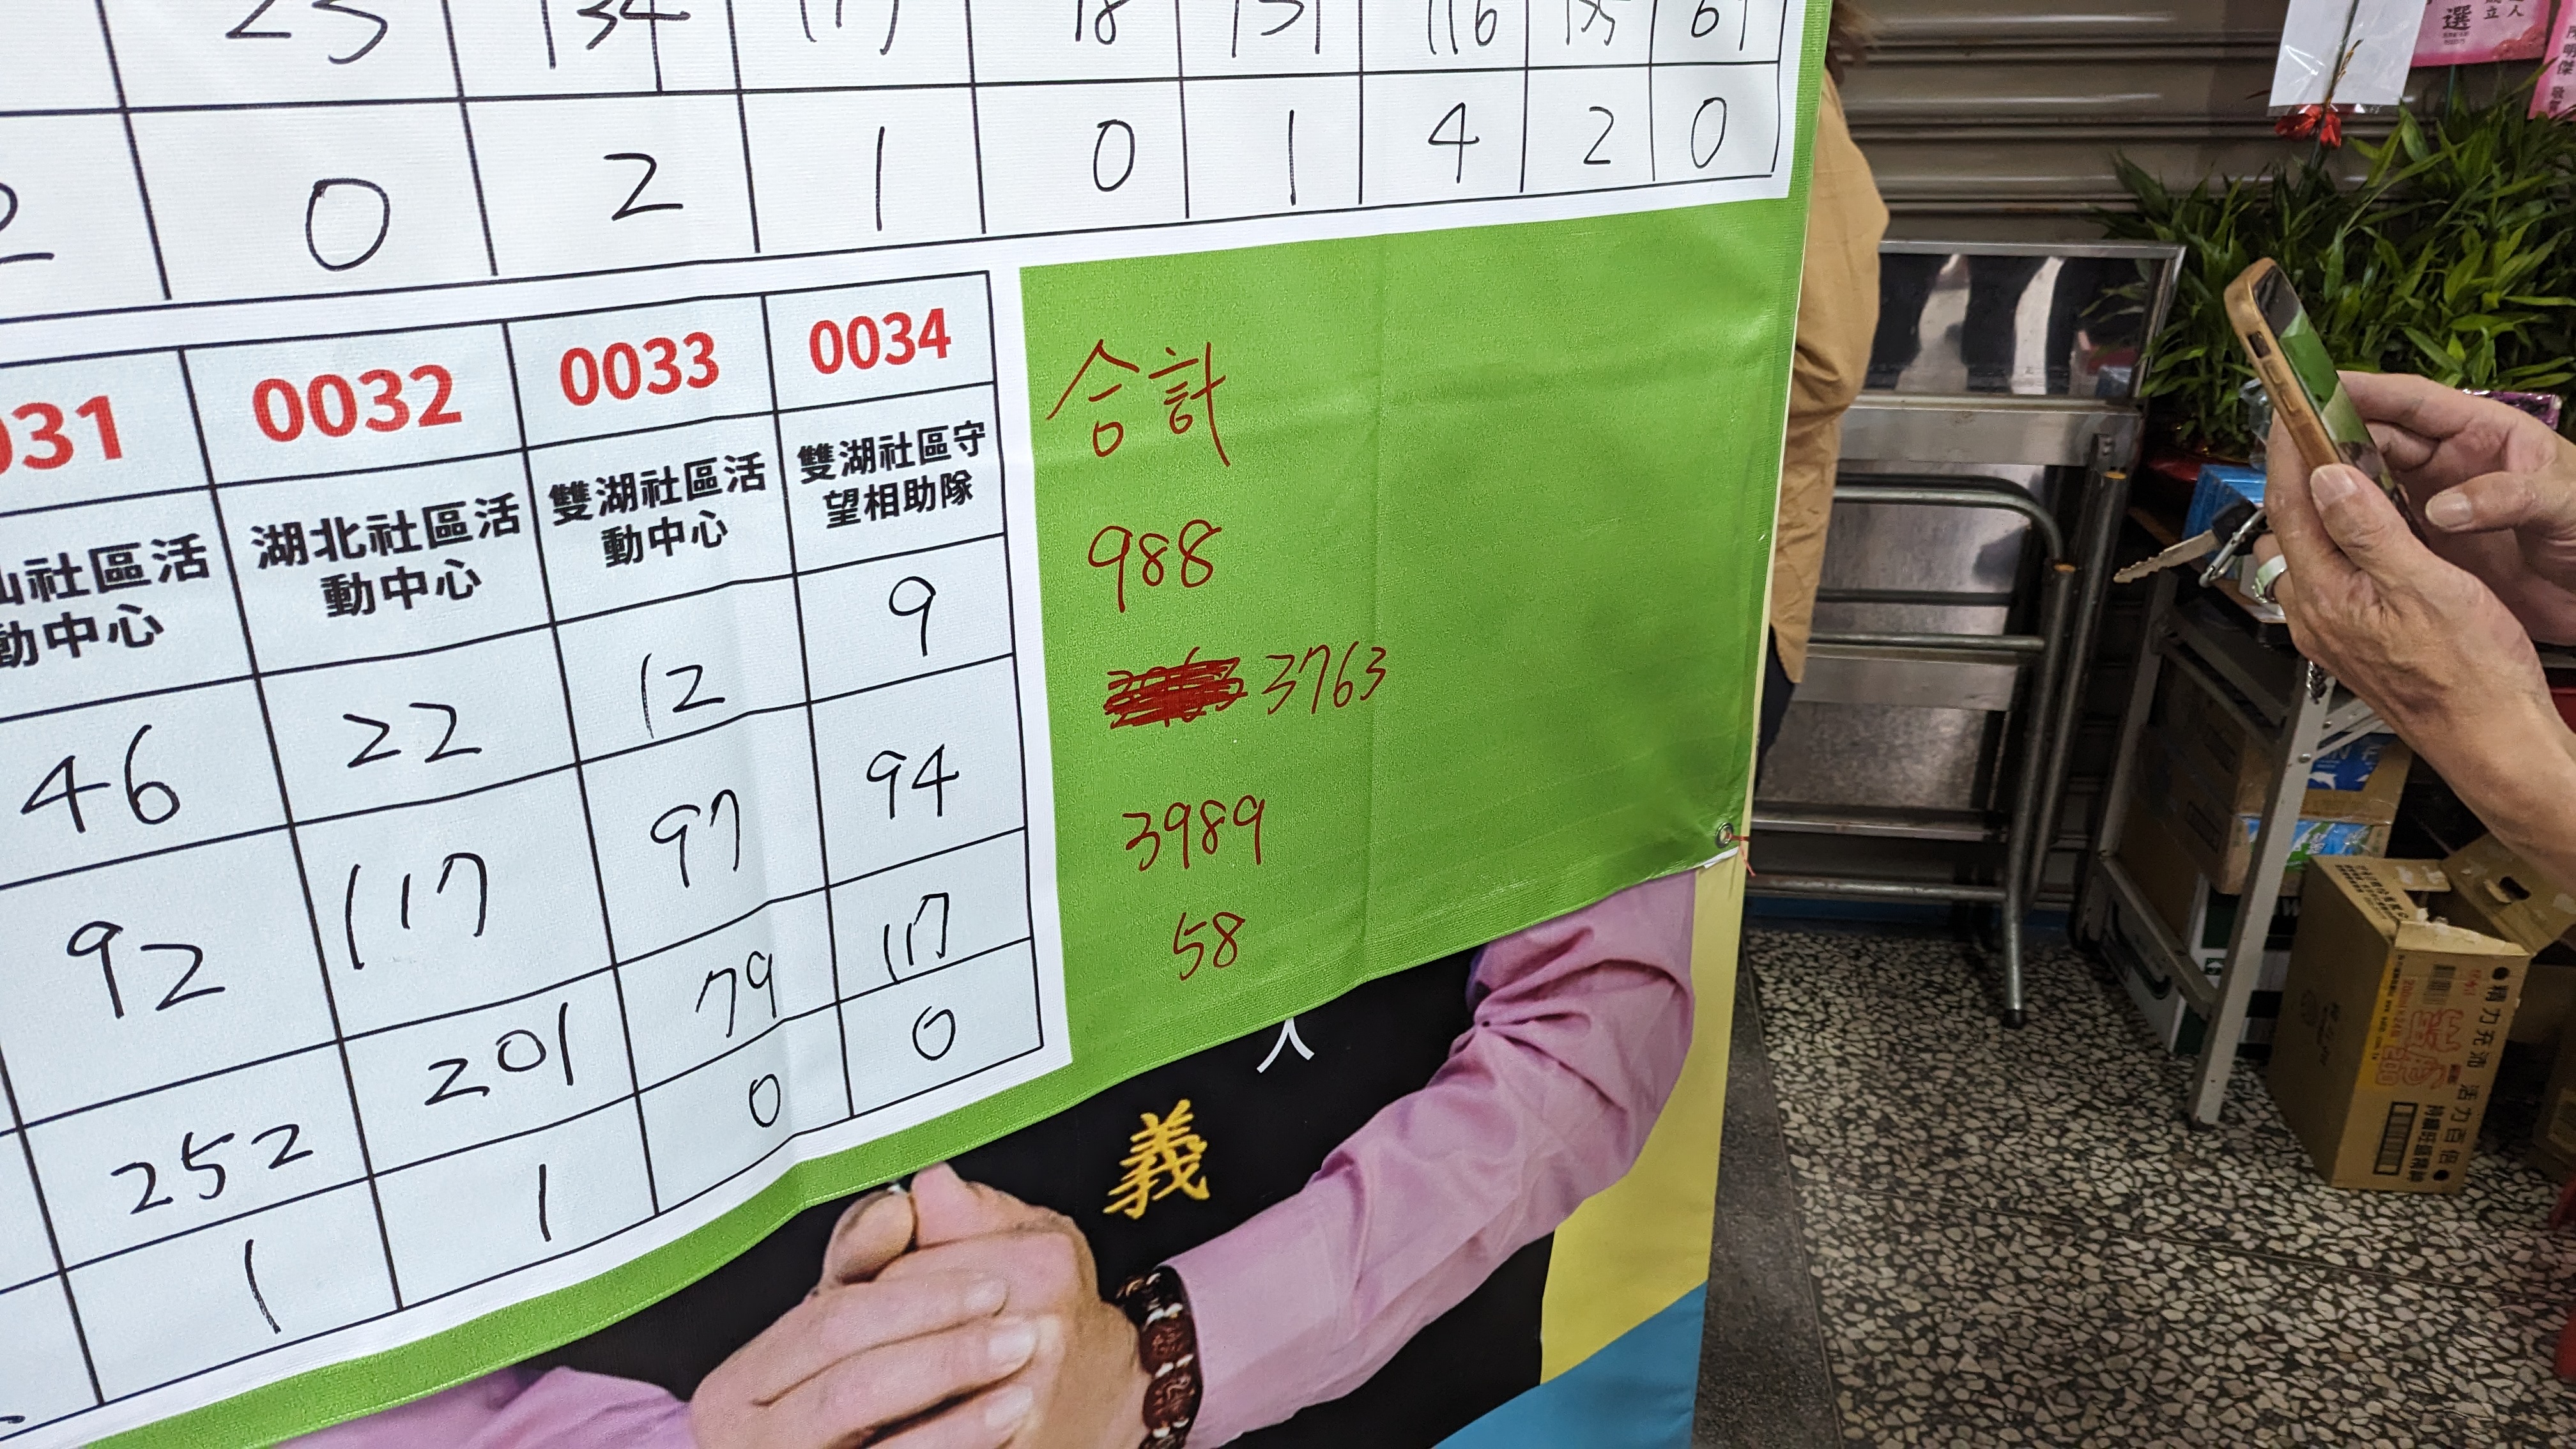 根据蓝万义竞总统计，以3763票落后黄雯如的3989票。记者陈敬丰／摄影